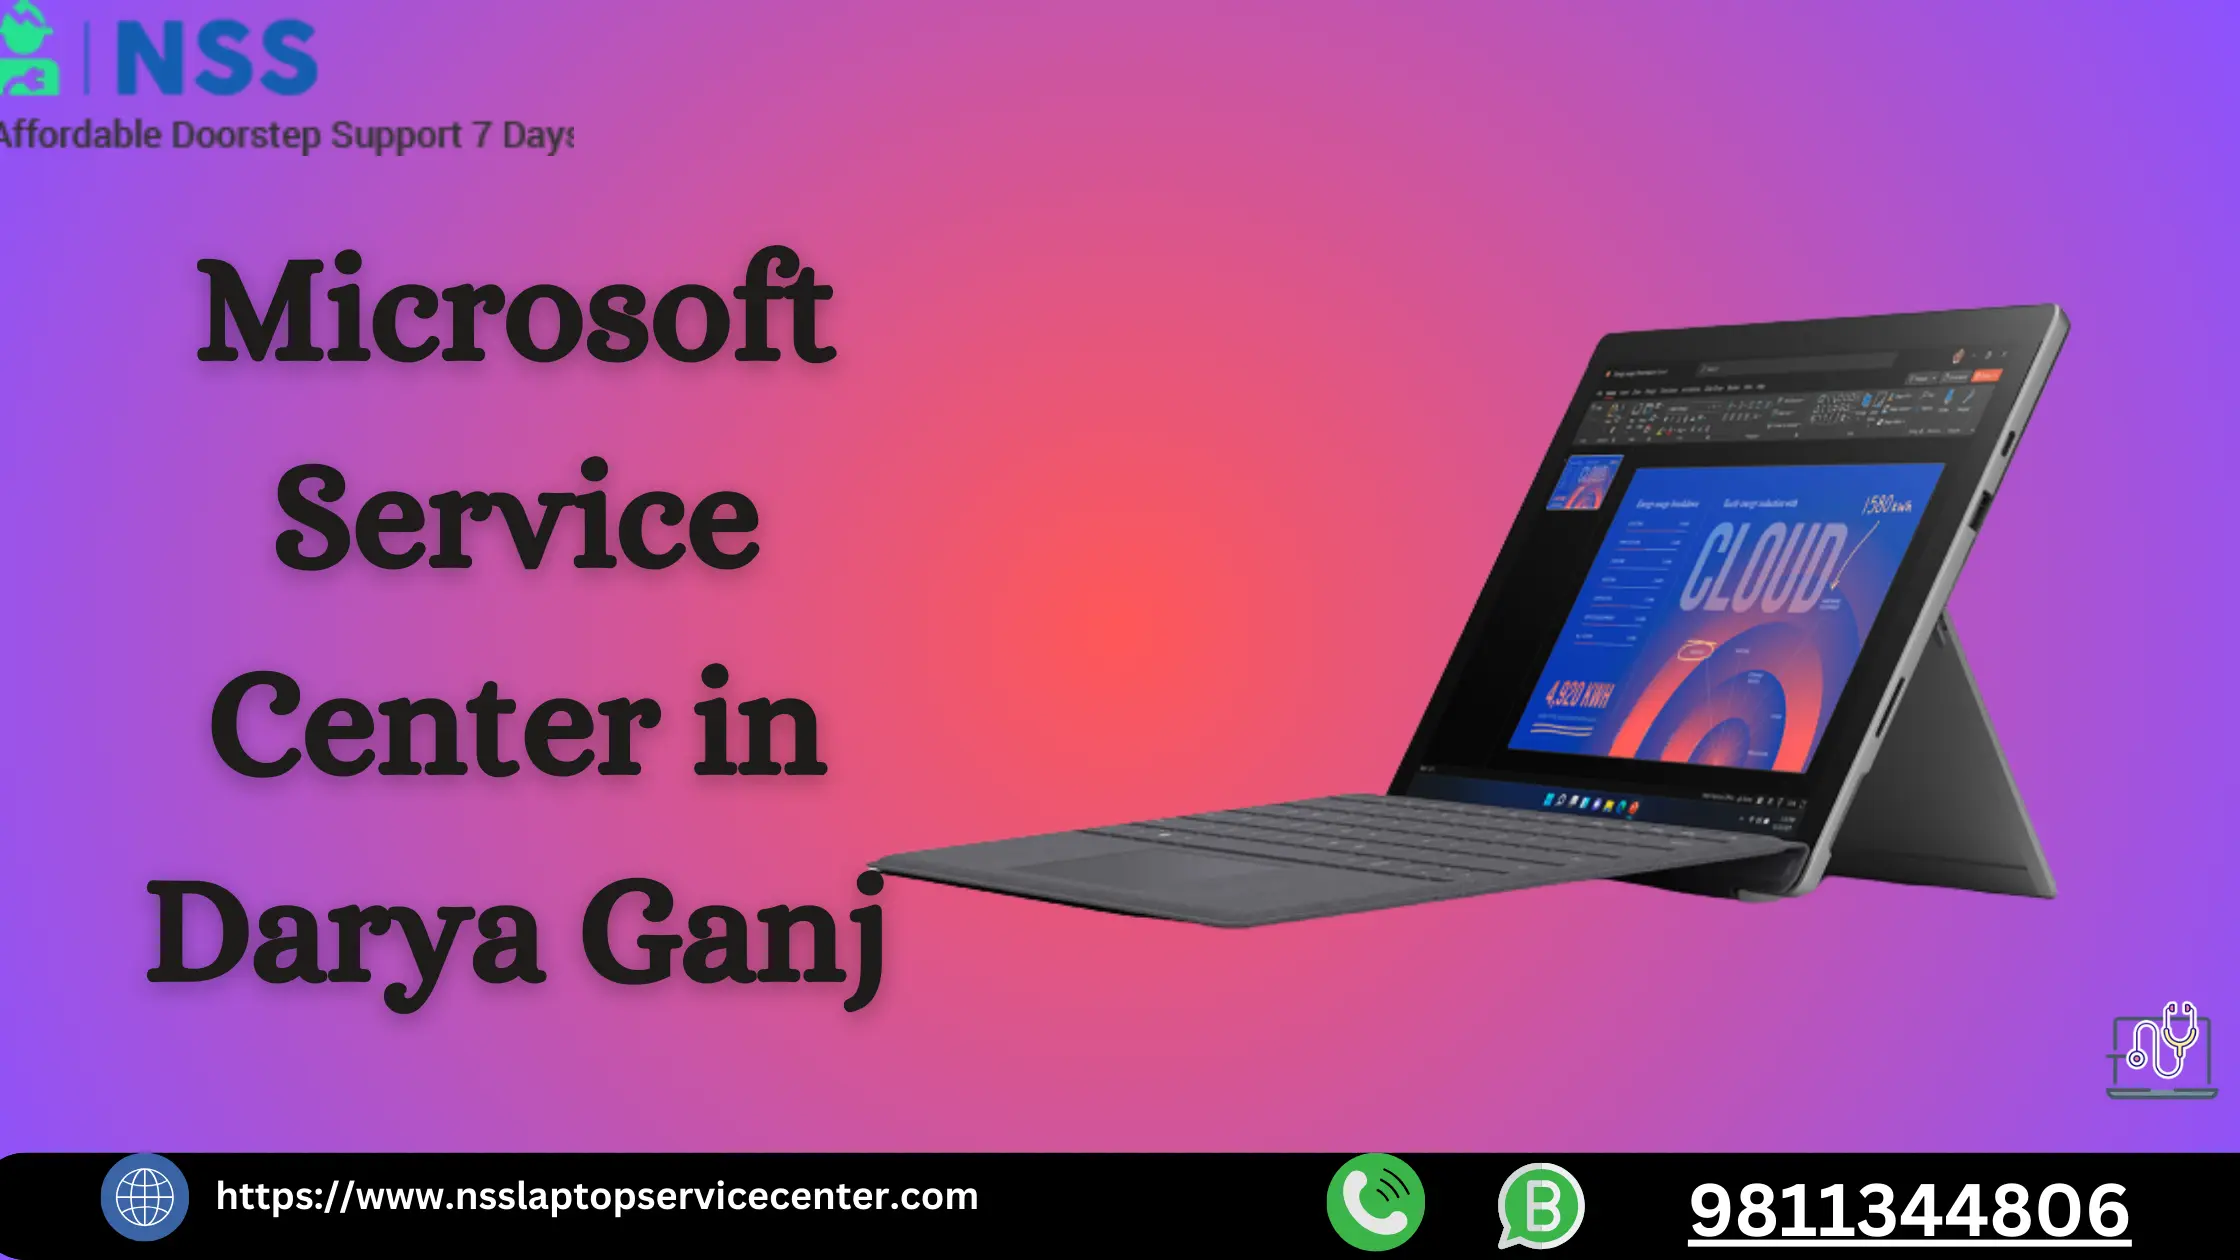 Microsoft Service Center in Darya Ganj Near Delhi